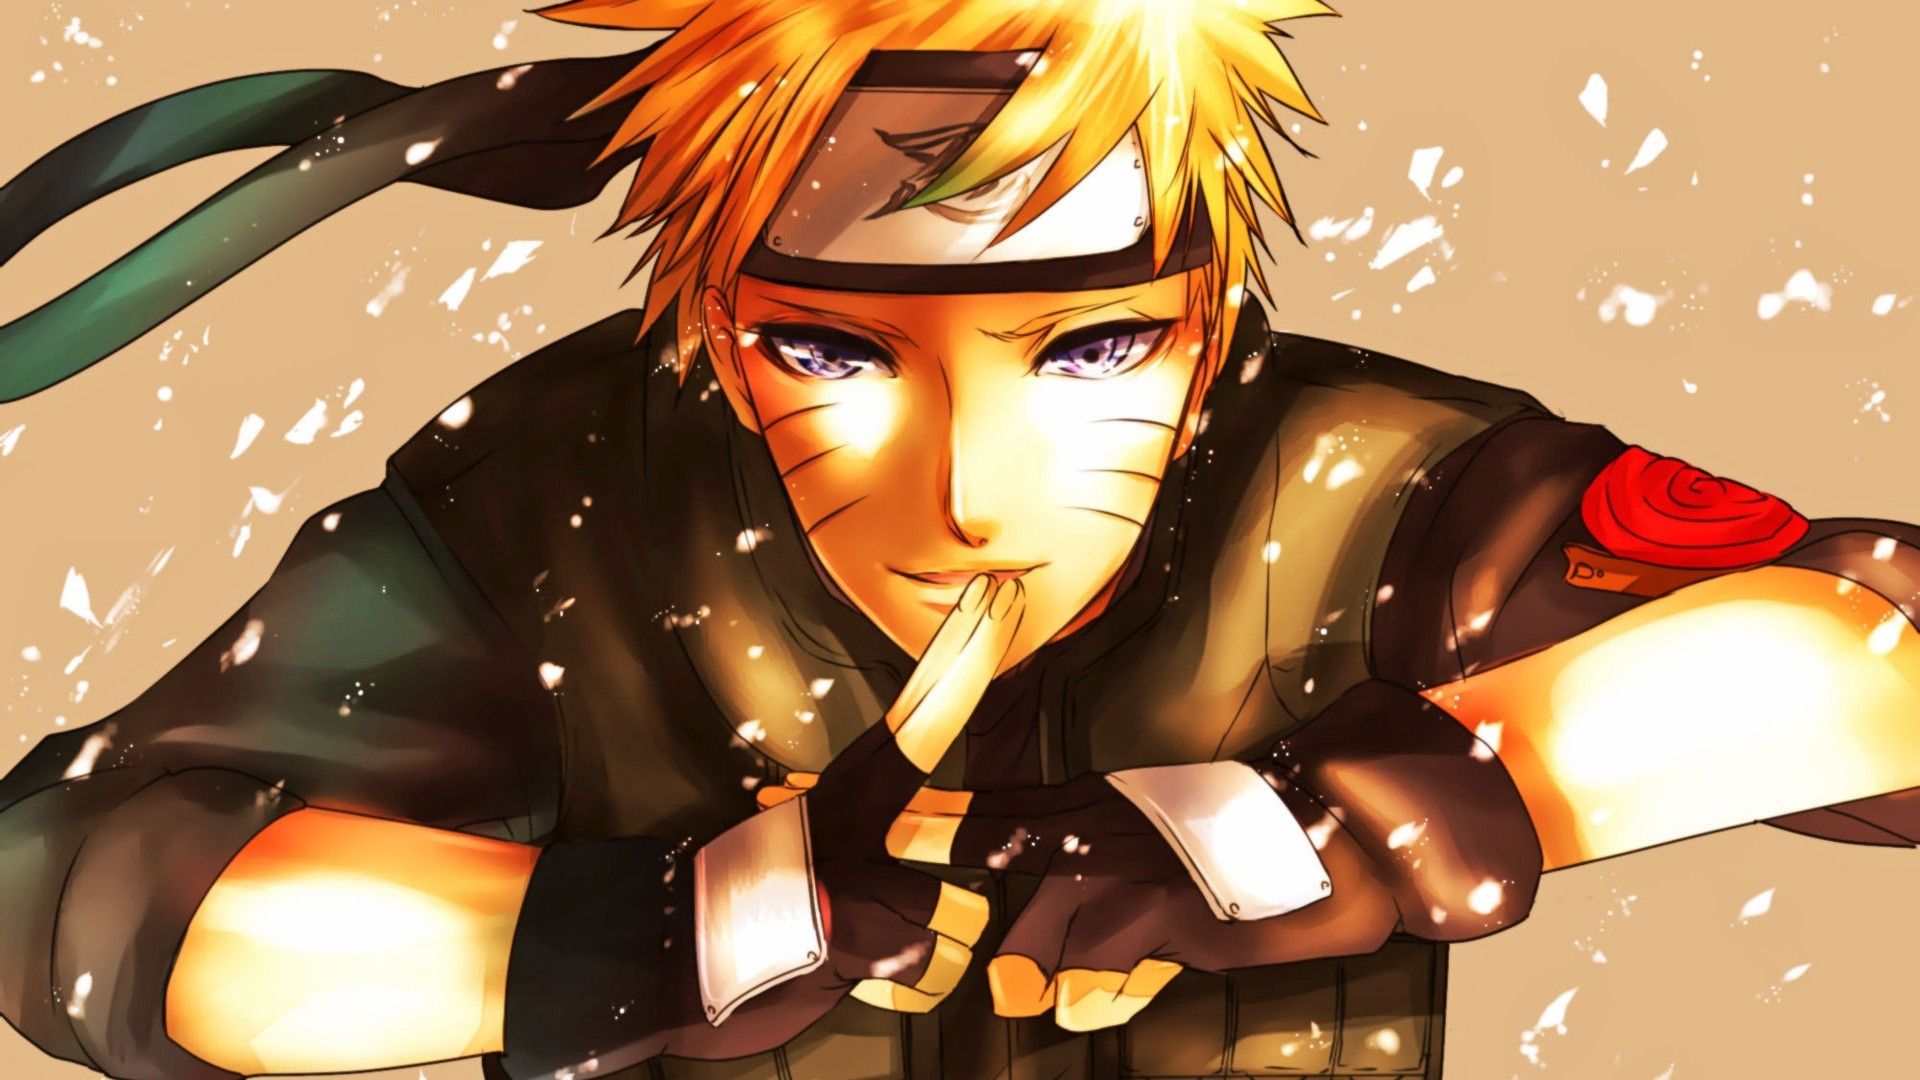 Naruto hd 1080p, Wallpaper Image